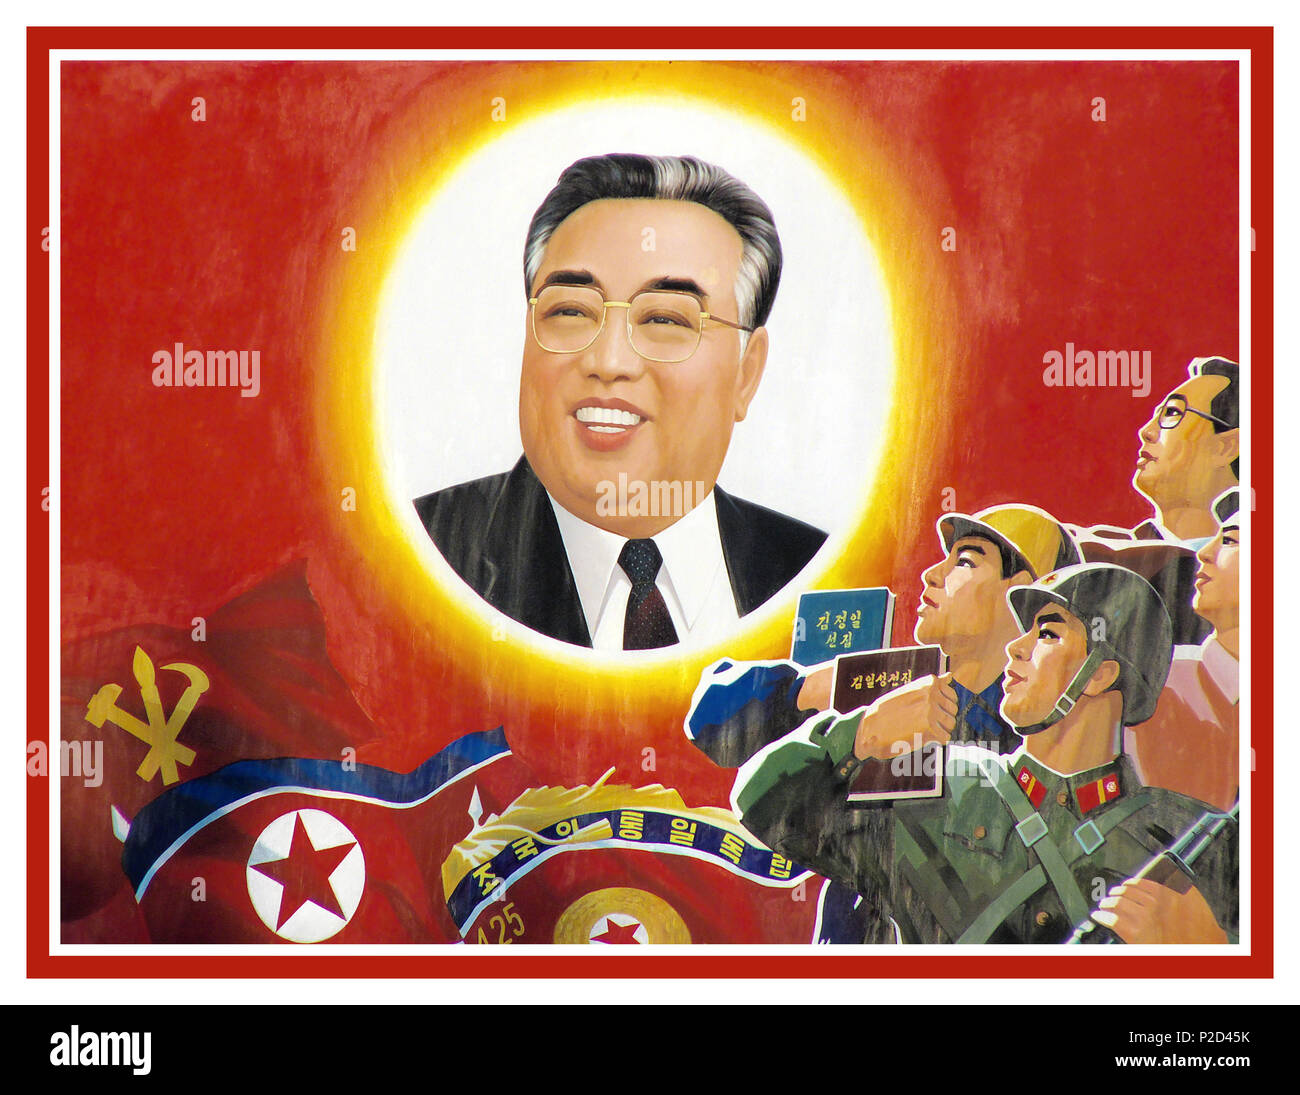 Vintage poster di propaganda degli anni sessanta Kim Il-sung Corea del Nord, ufficialmente la Repubblica Popolare Democratica di Corea in "Repubblica popolare democratica di Corea (DPRK), Kim Il-sung costruito un culto della personalità, un comunista dittatura totalitaria stabilito sotto una ideologia noto come "Juche" Foto Stock